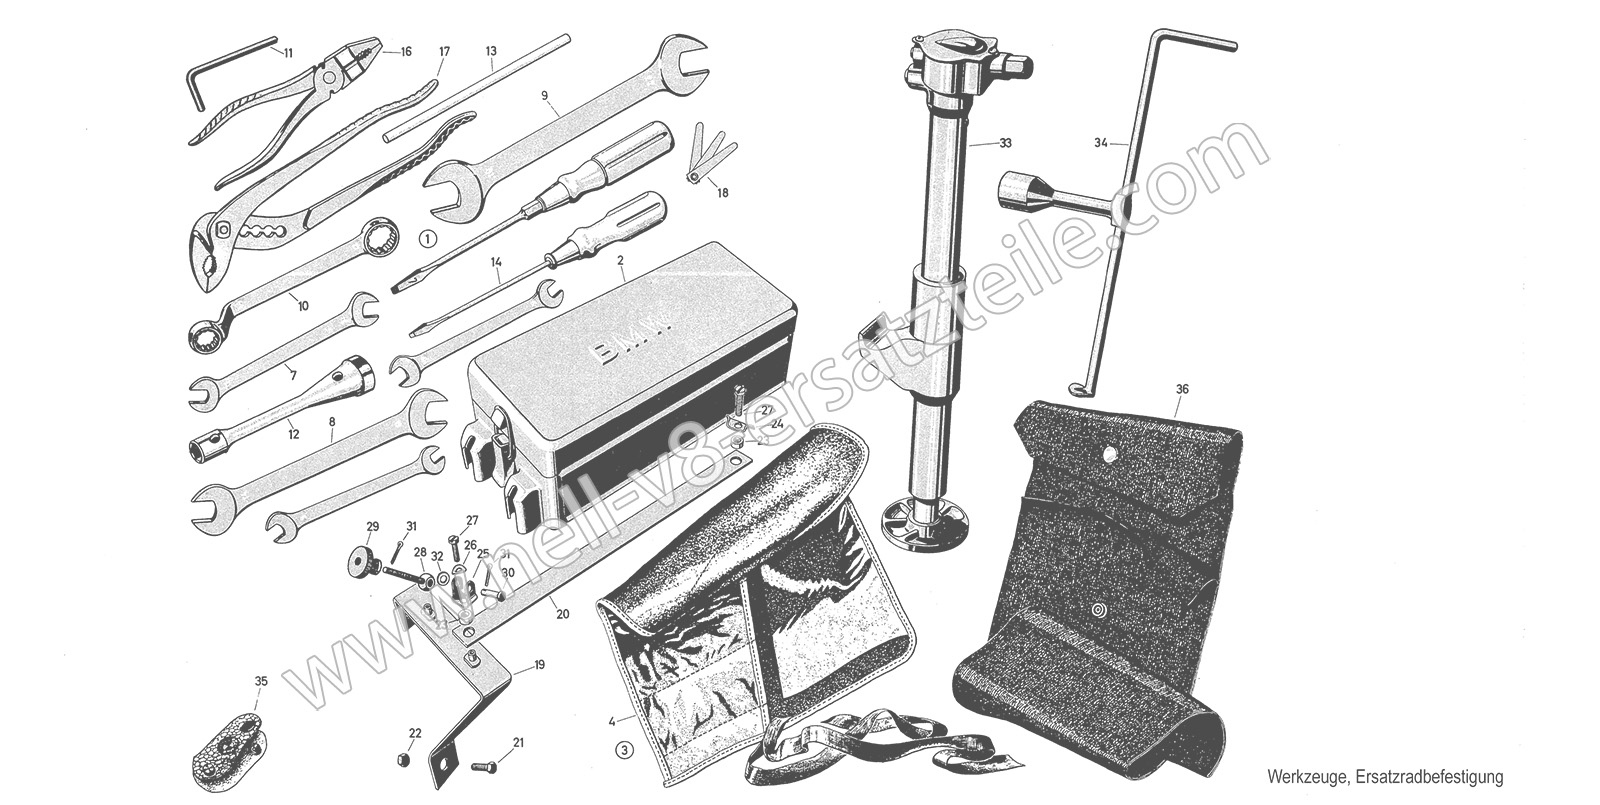 Ersatzteile Werkzeuge, Ersatzradbefestigung